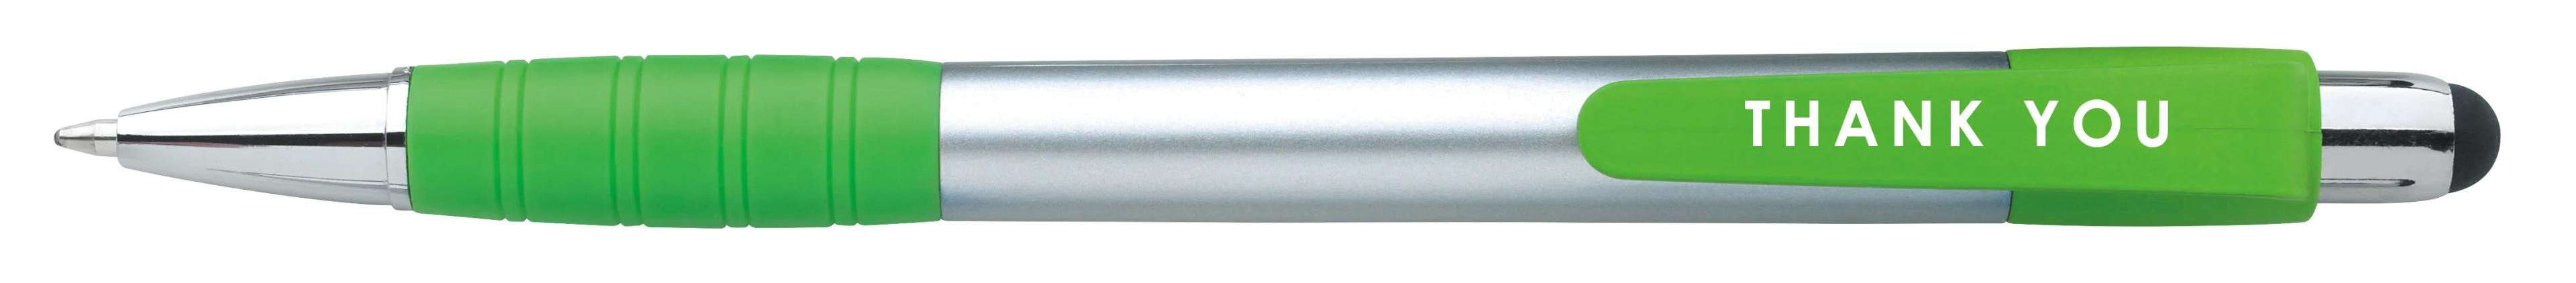 Silver Element Stylus Pen 38 of 53